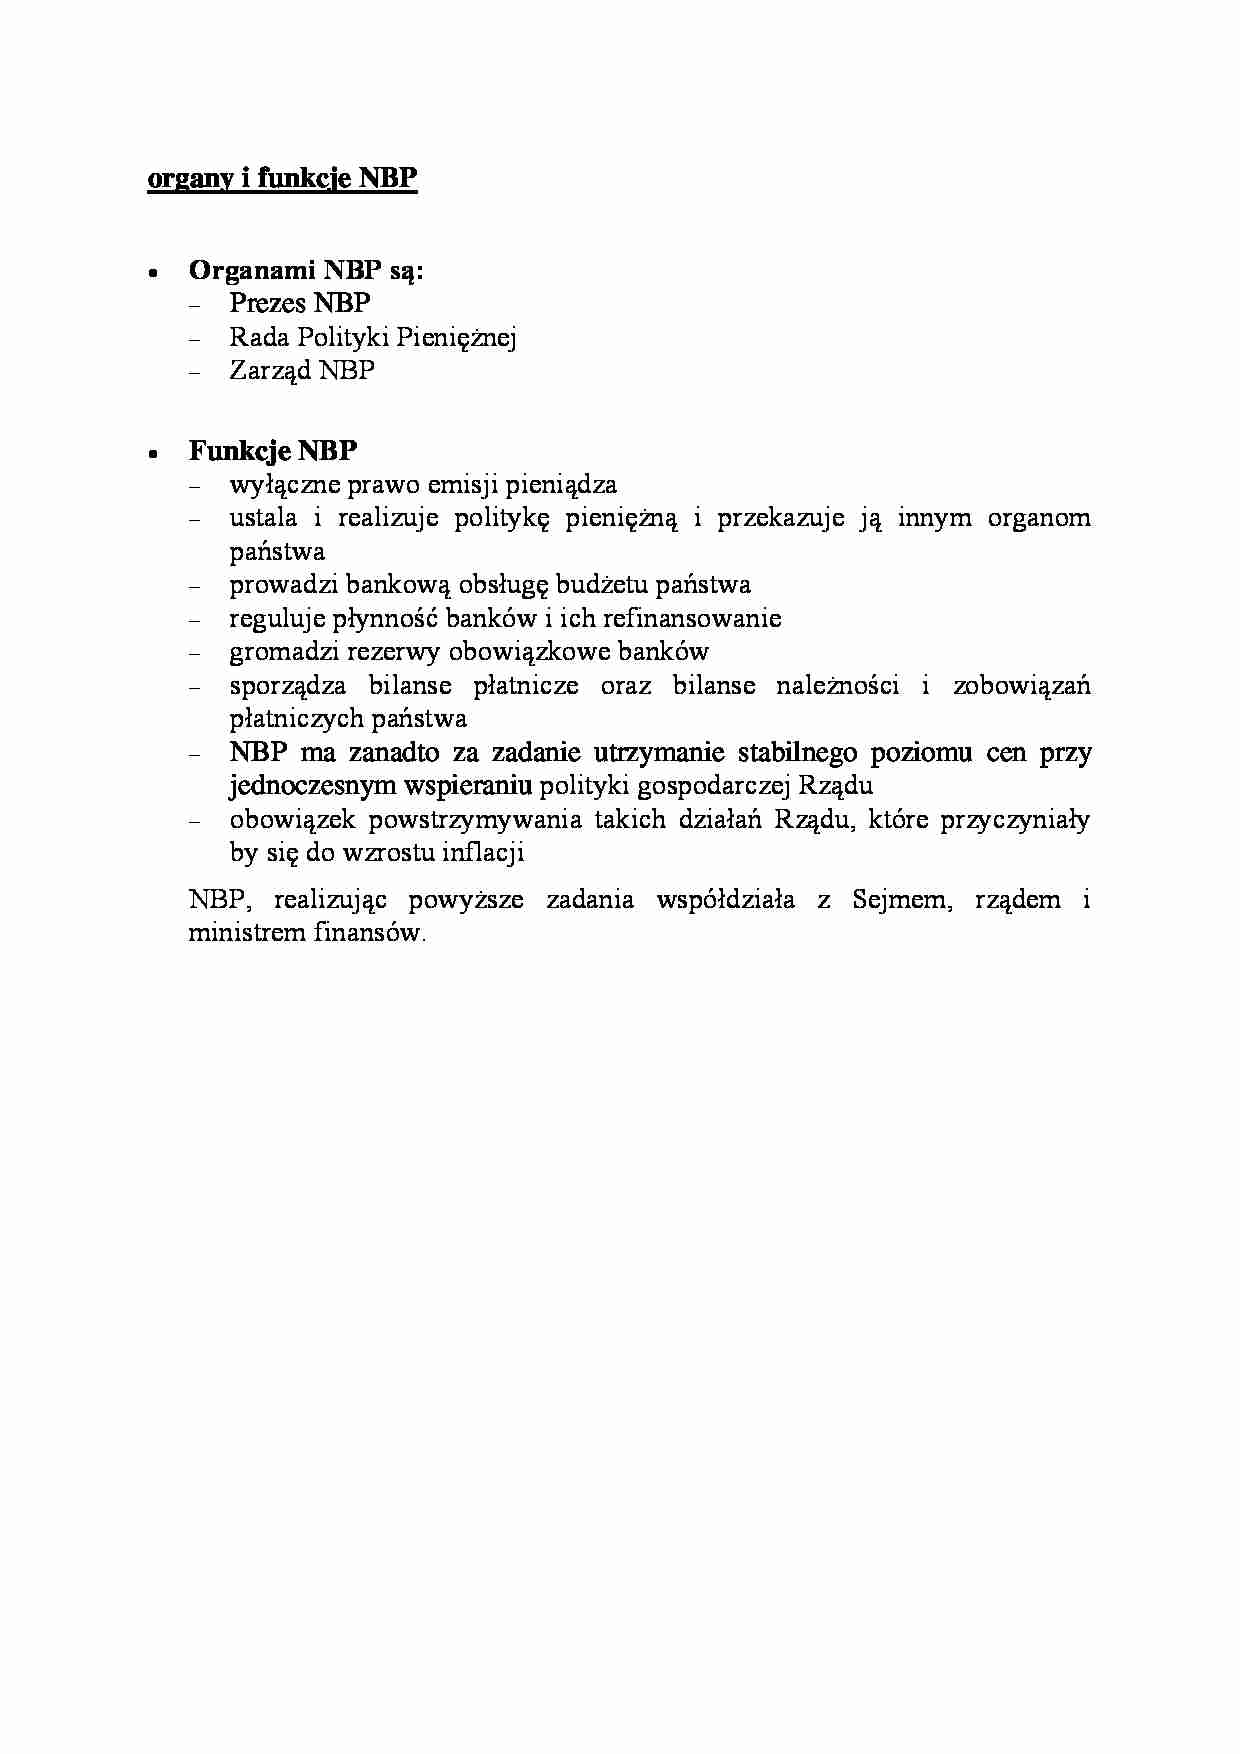 organy i funkcje Narodowego Banku Polskiego - omówienie - strona 1